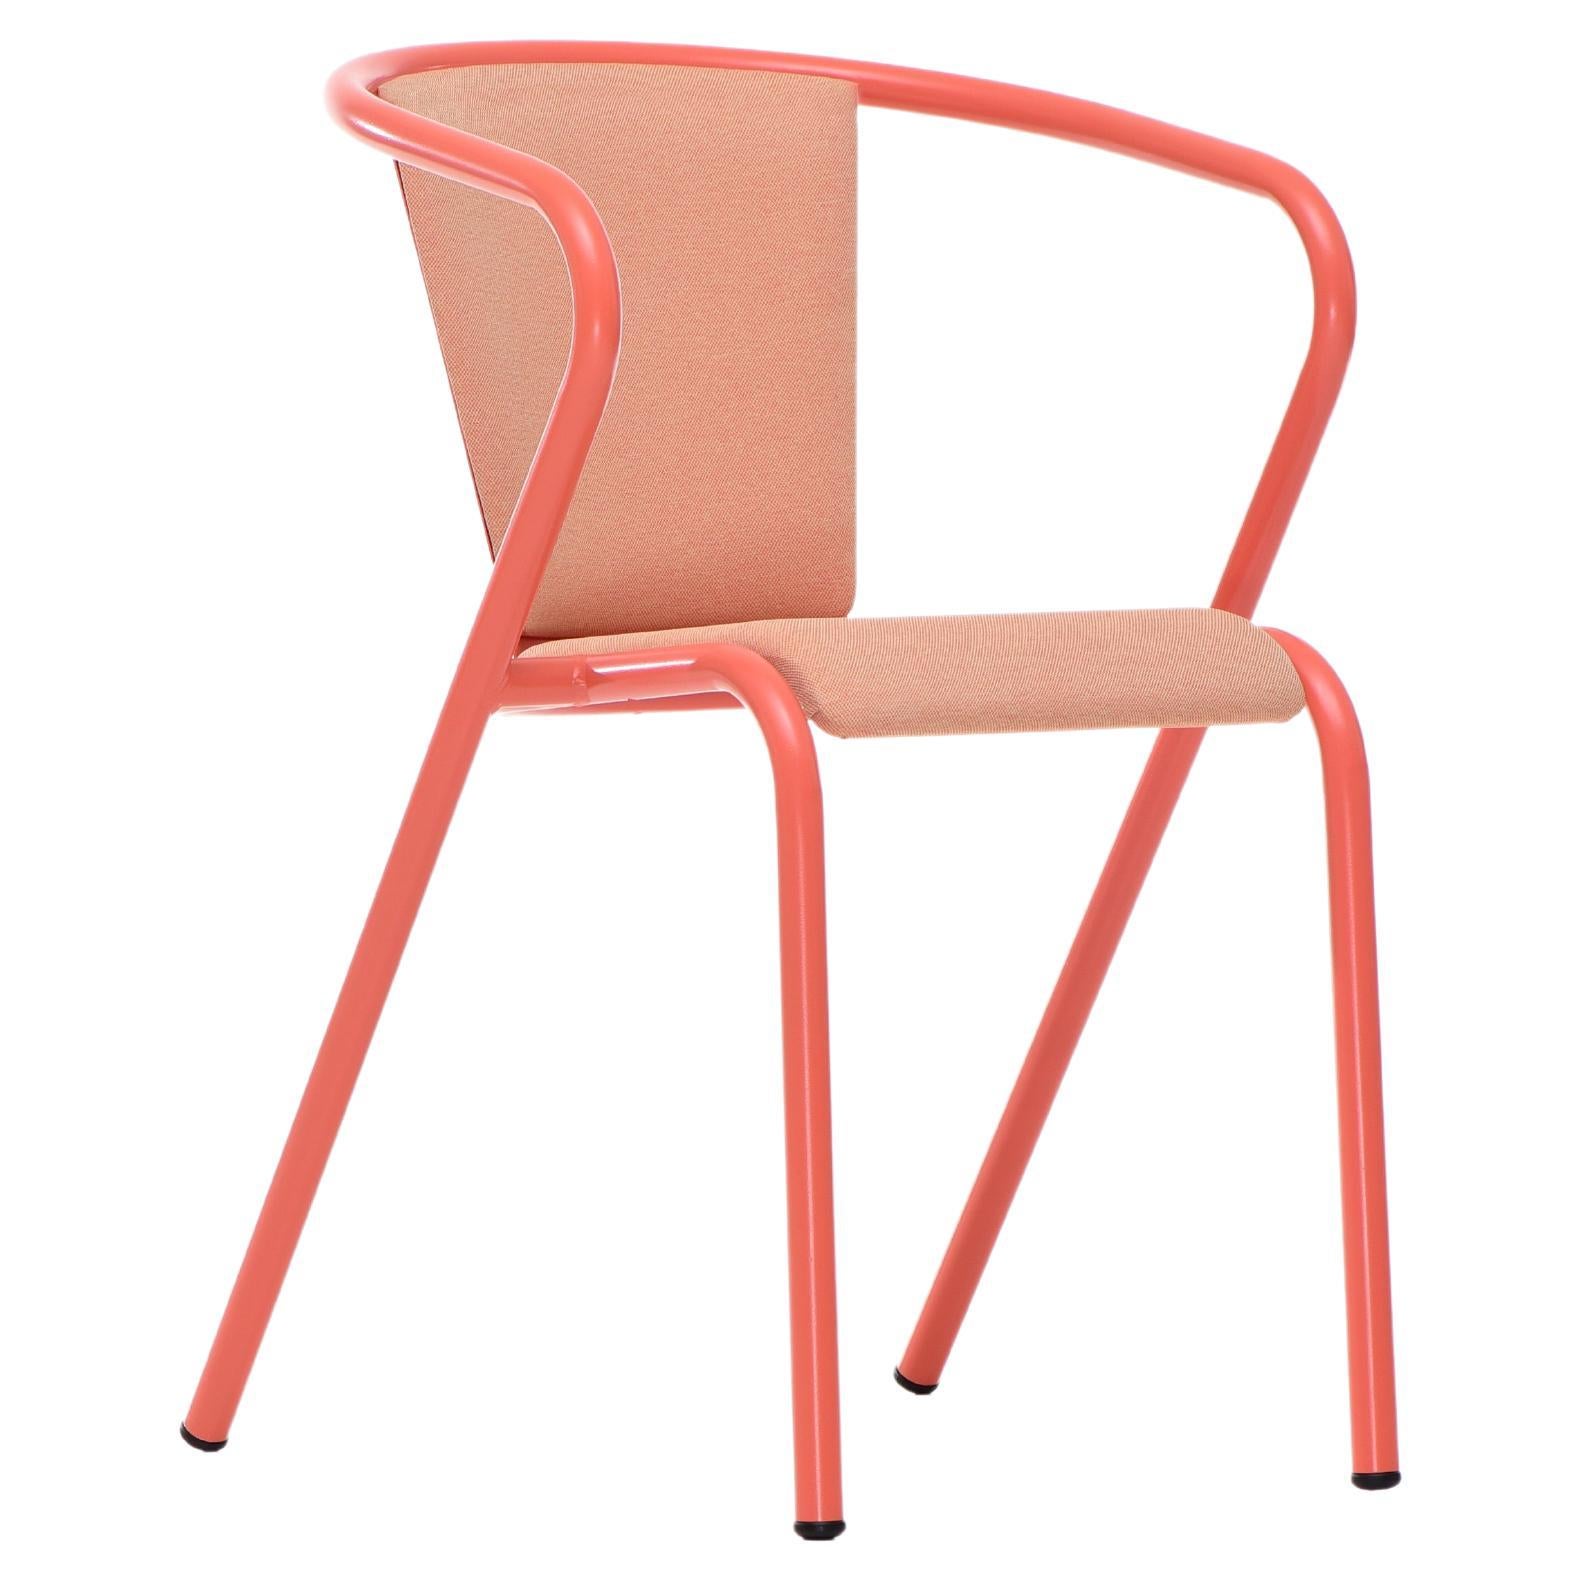 BICA-Sessel aus Stahl in Lachsrosa, gepolstert mit Eco-Stoff